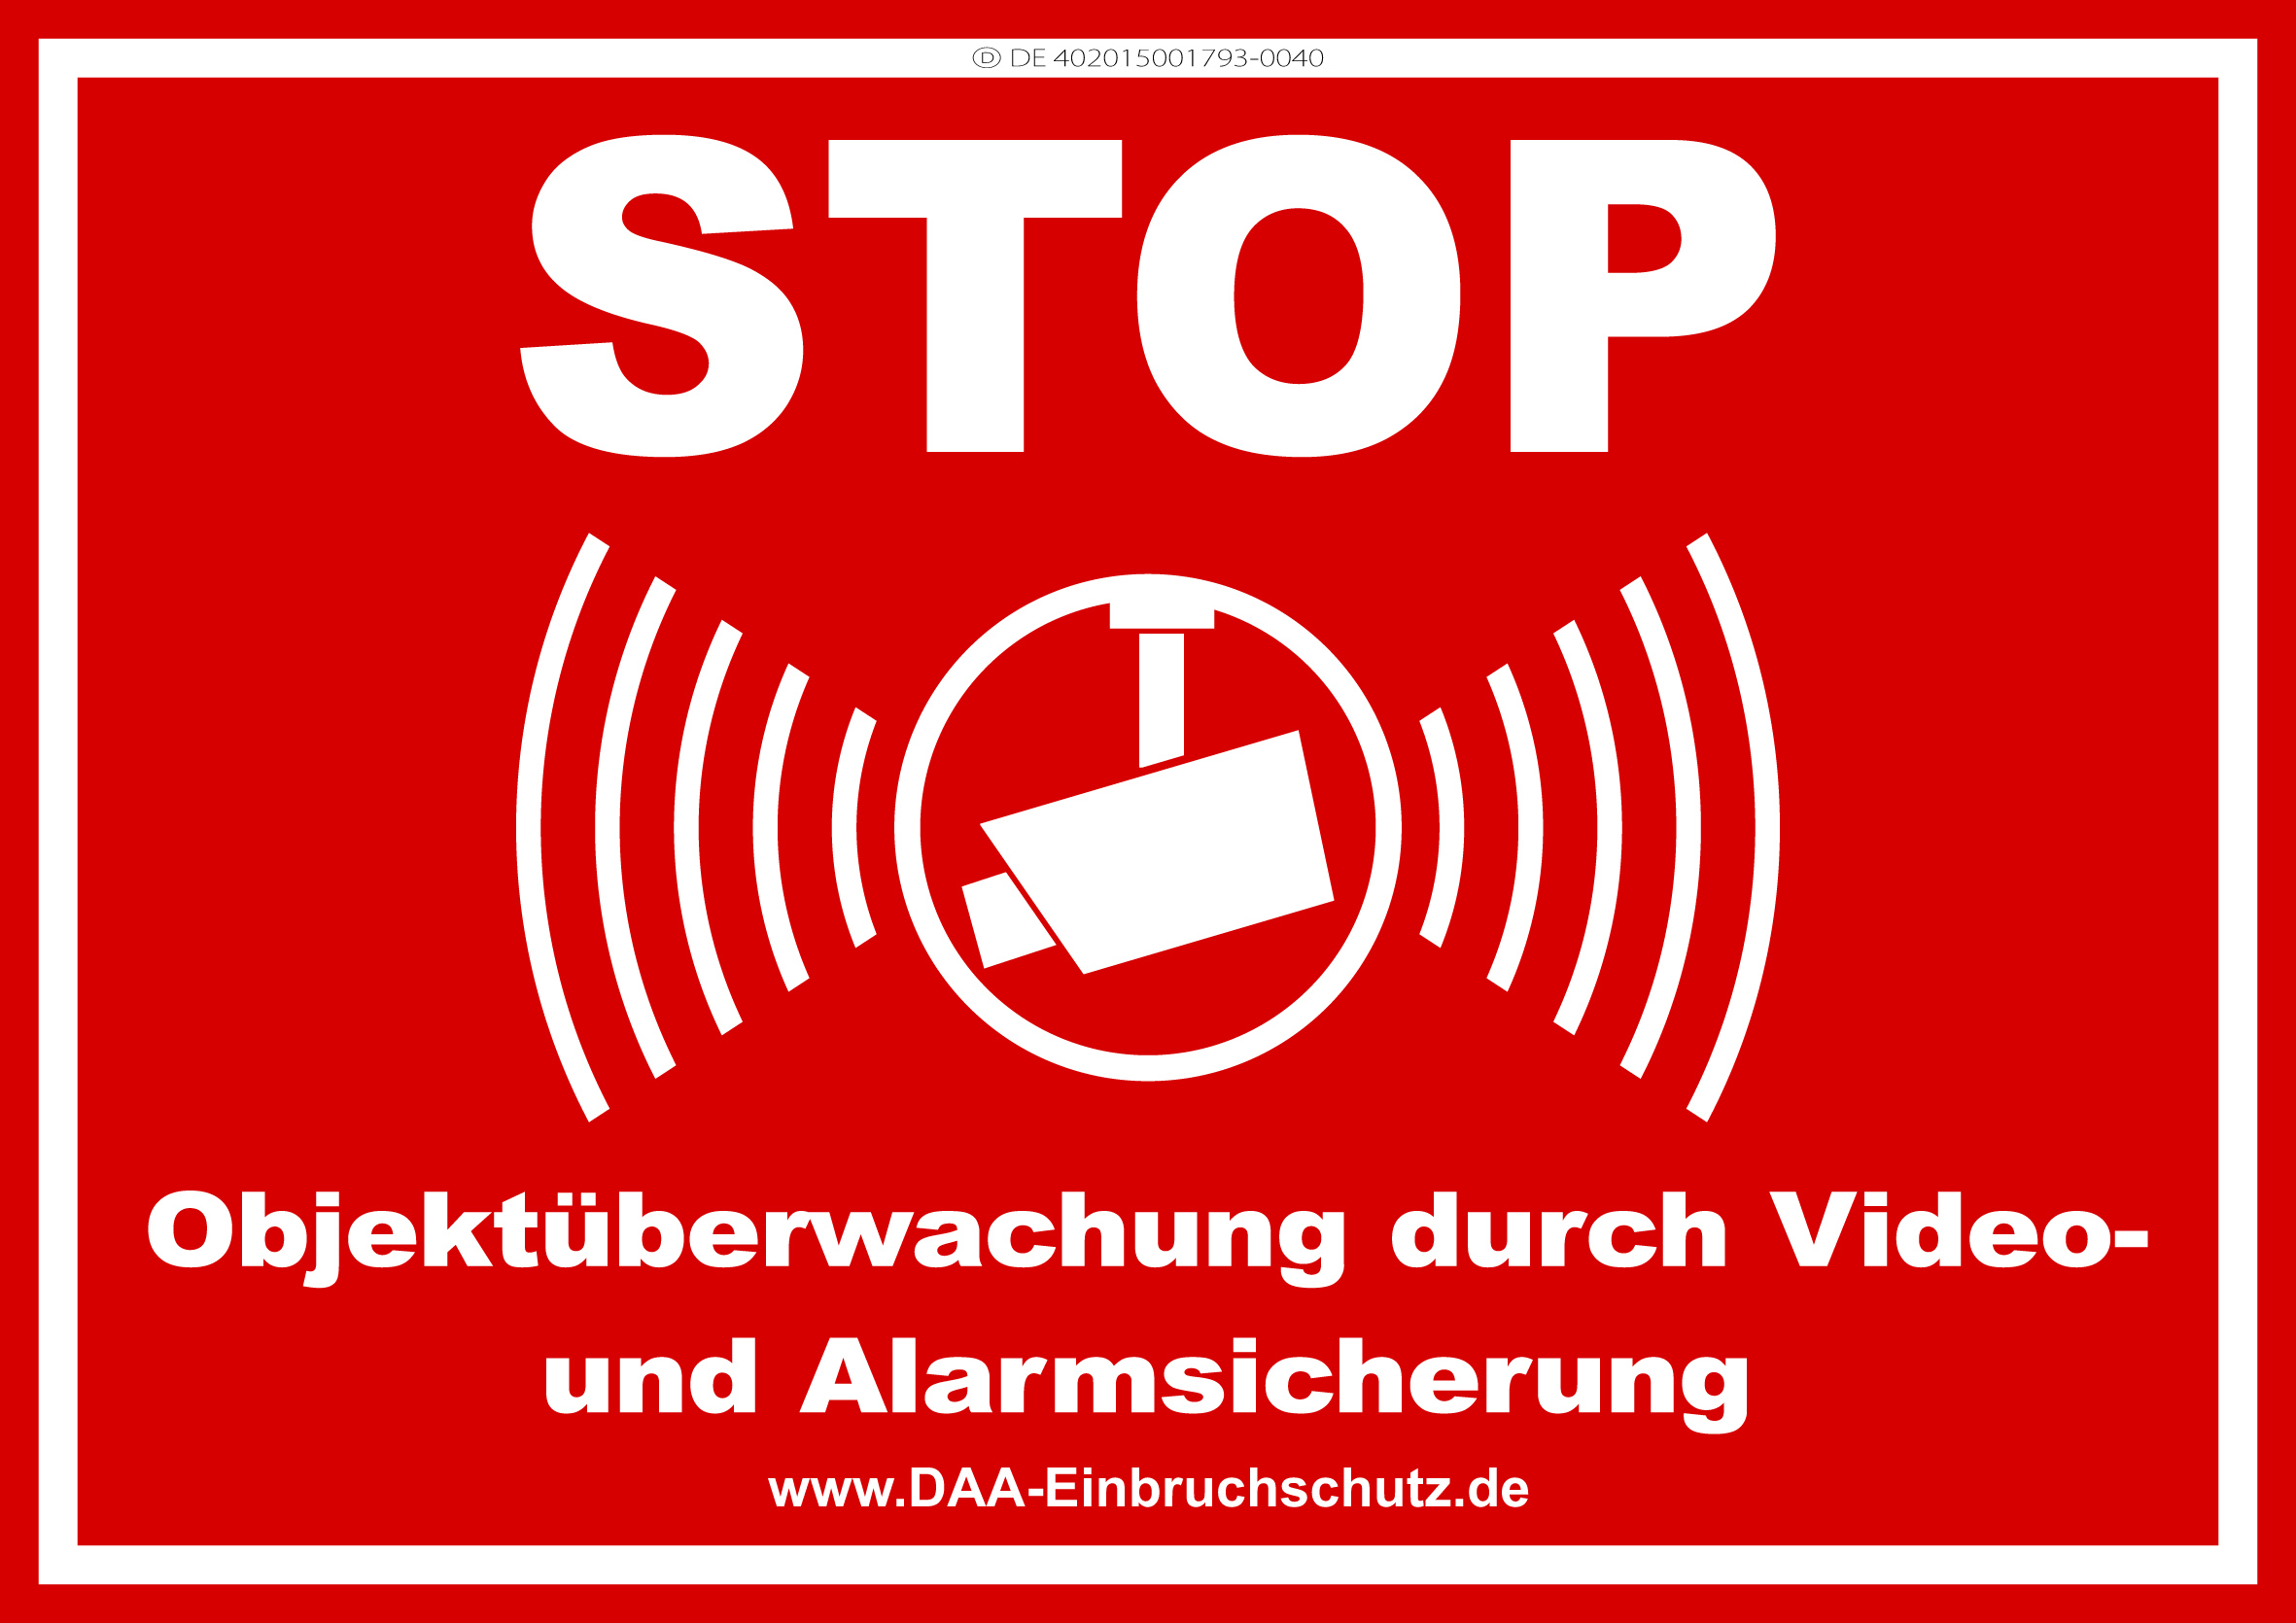 DAA-Einbruchschutz - Hinweisbeschilderung - Objektüberwachung durch Video-  und Alarmsicherung 003